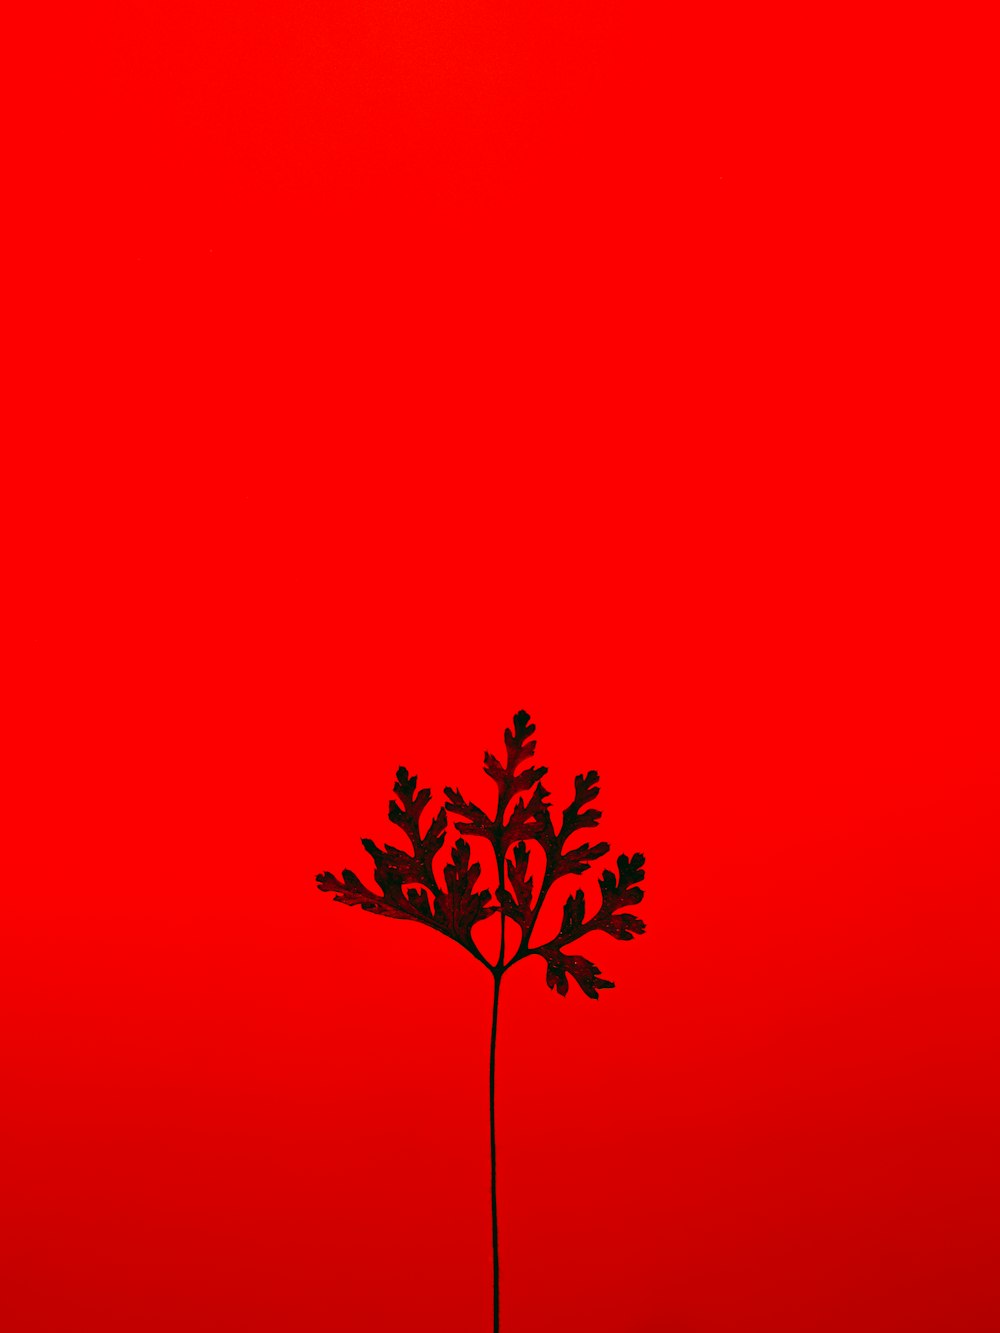 arbre rouge et noir avec fond rouge